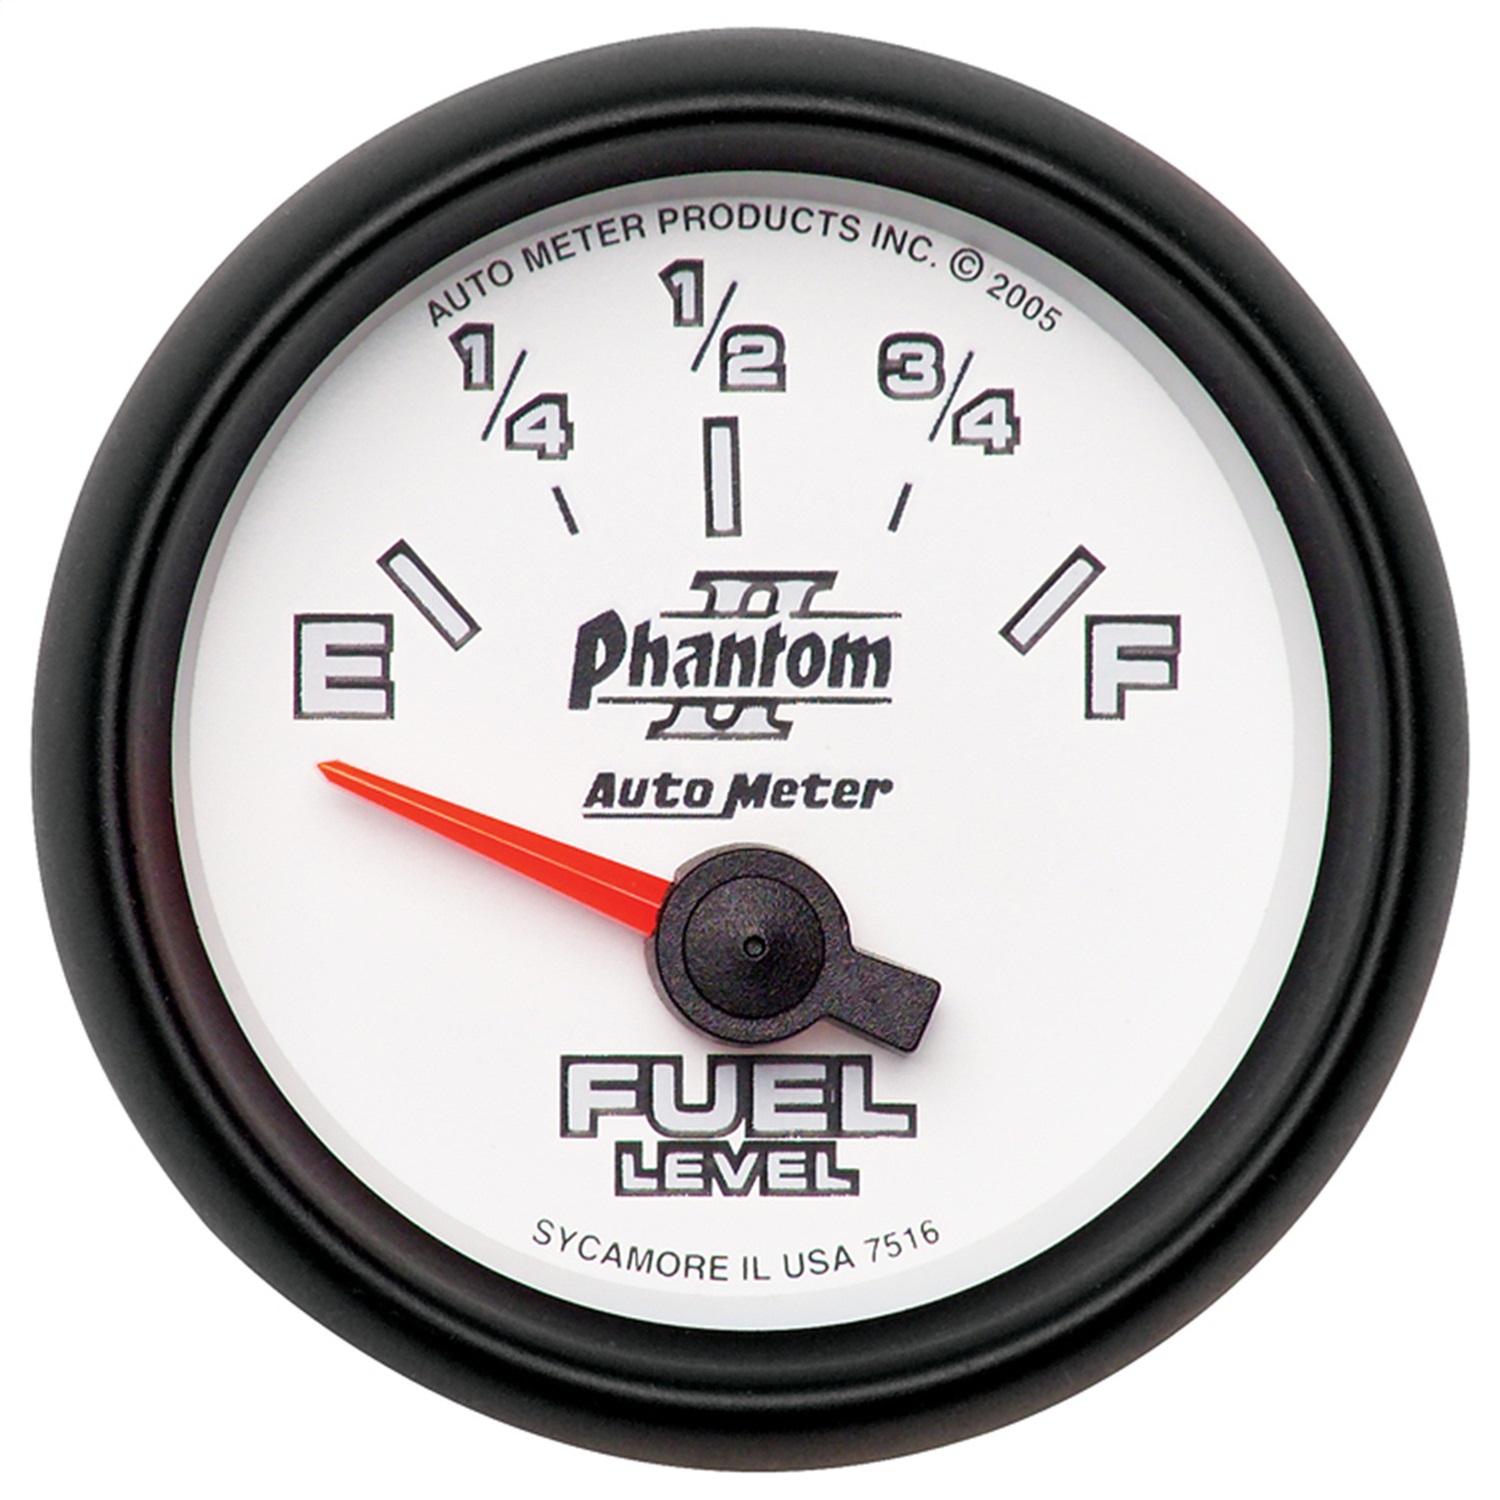 Auto Meter Auto Meter 7516 Phantom II; Electric Fuel Level Gauge